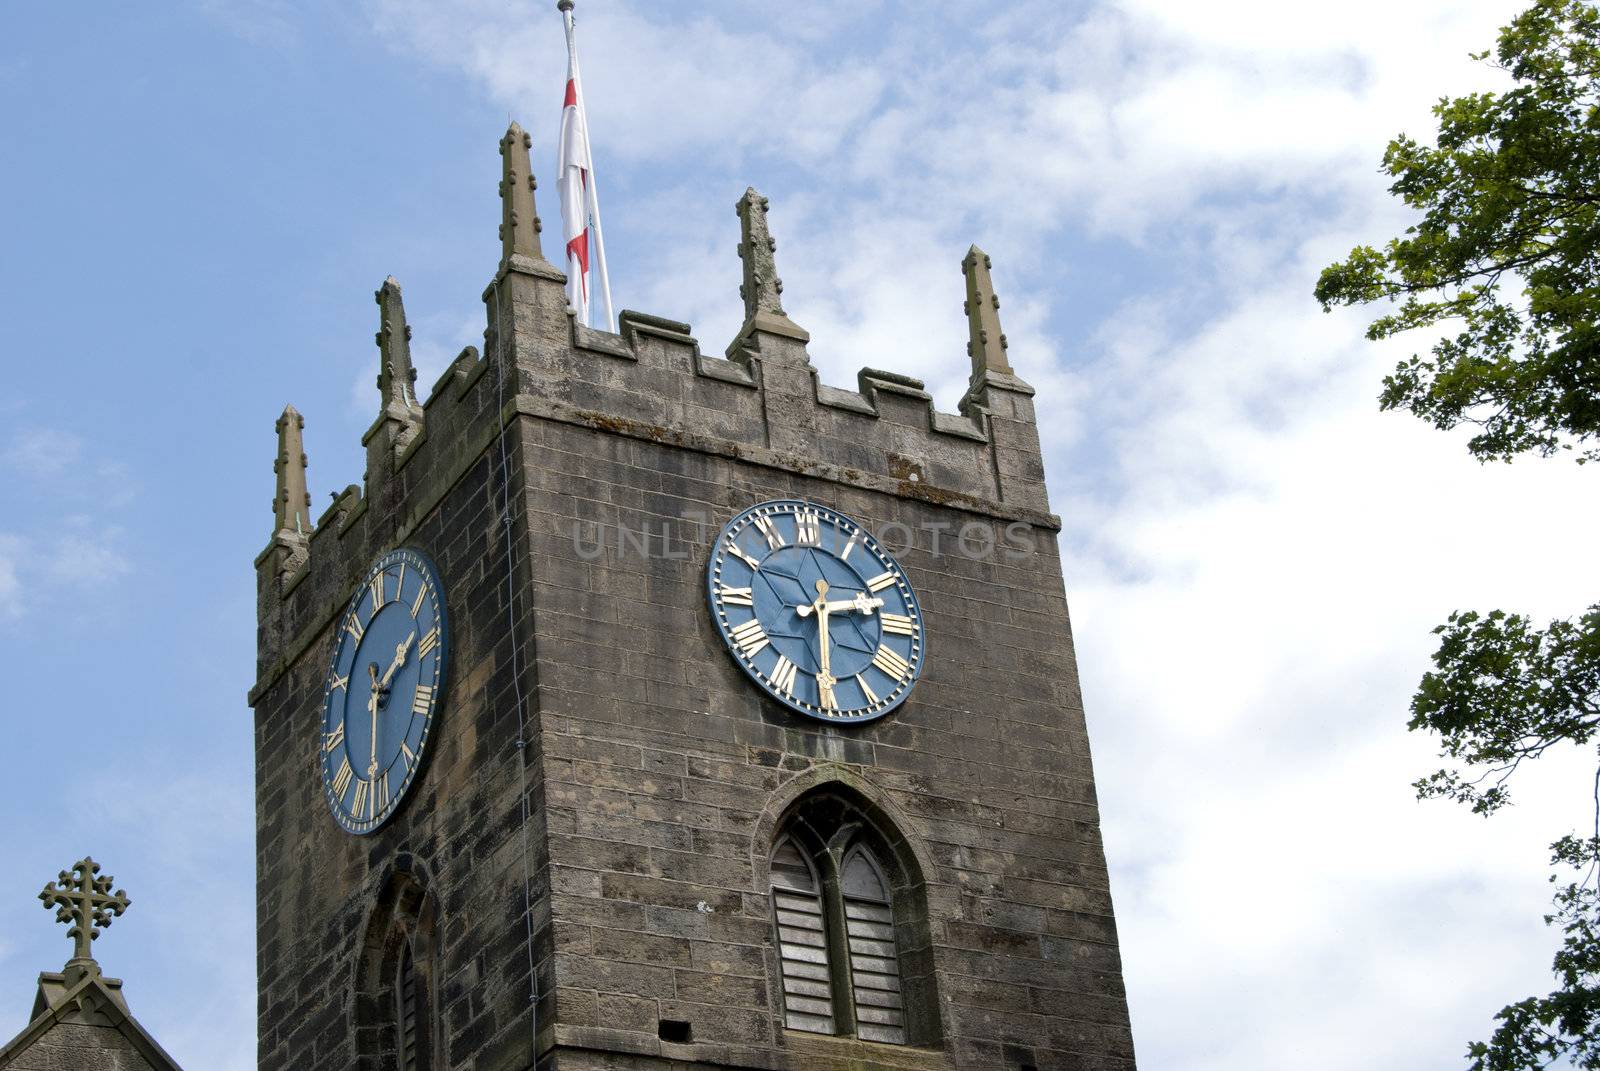 Haworth Church Clocktower by d40xboy